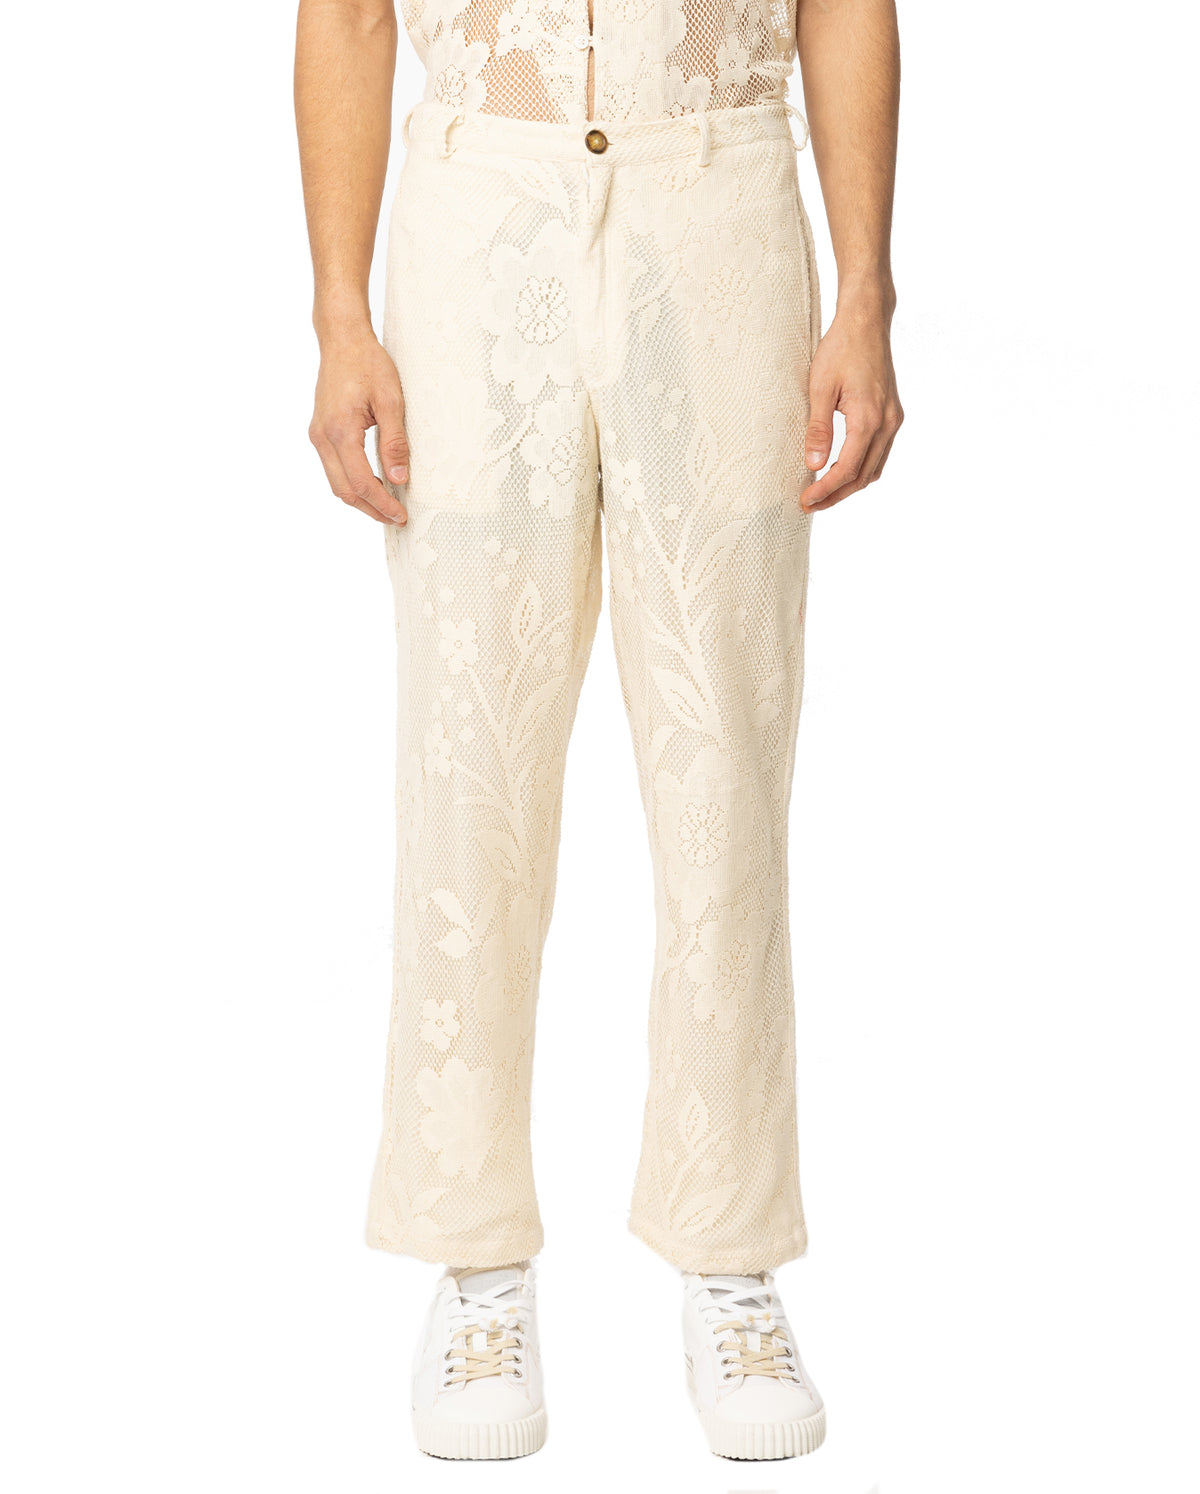 Lace Slim Cotton Pants - Off White